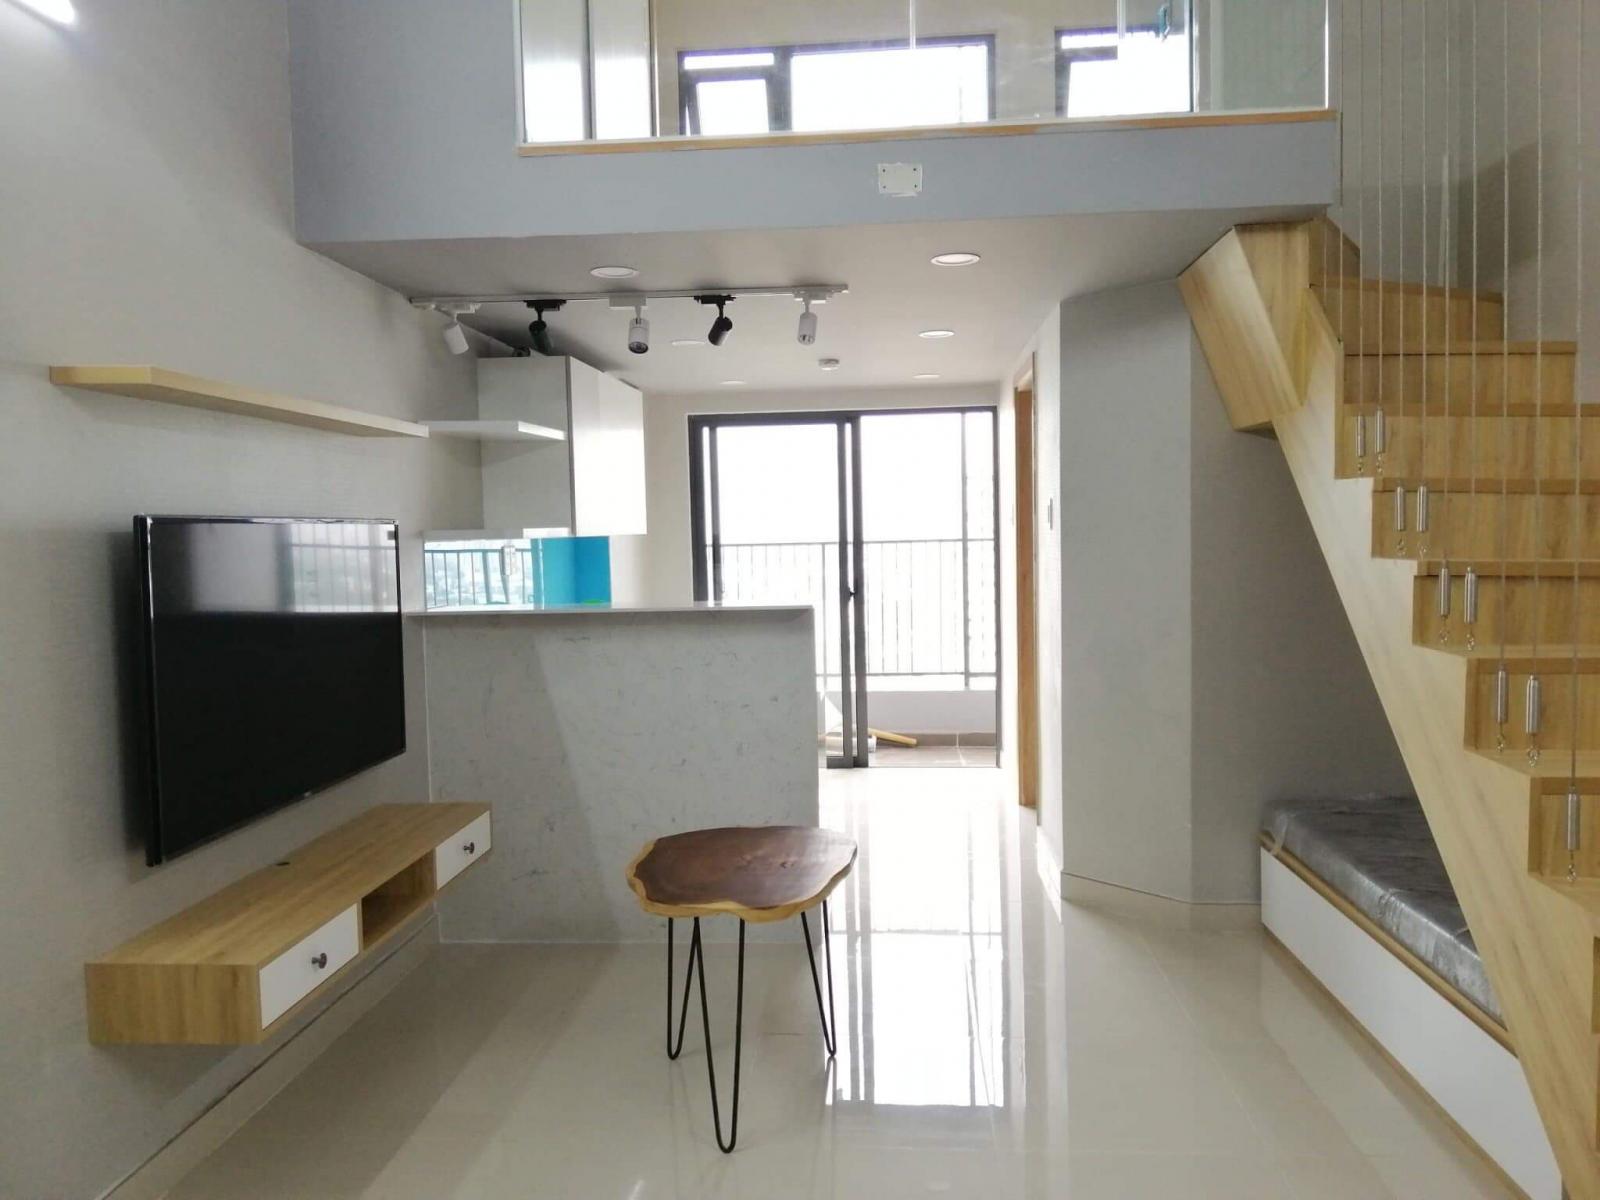 Cho thuê căn hộ Officetel La 3, 1 phòng ngủ, 43m2, pk, bếp Bancon, có nội thất ML, TV, MGiat.. Giá 8 triệu/th. 